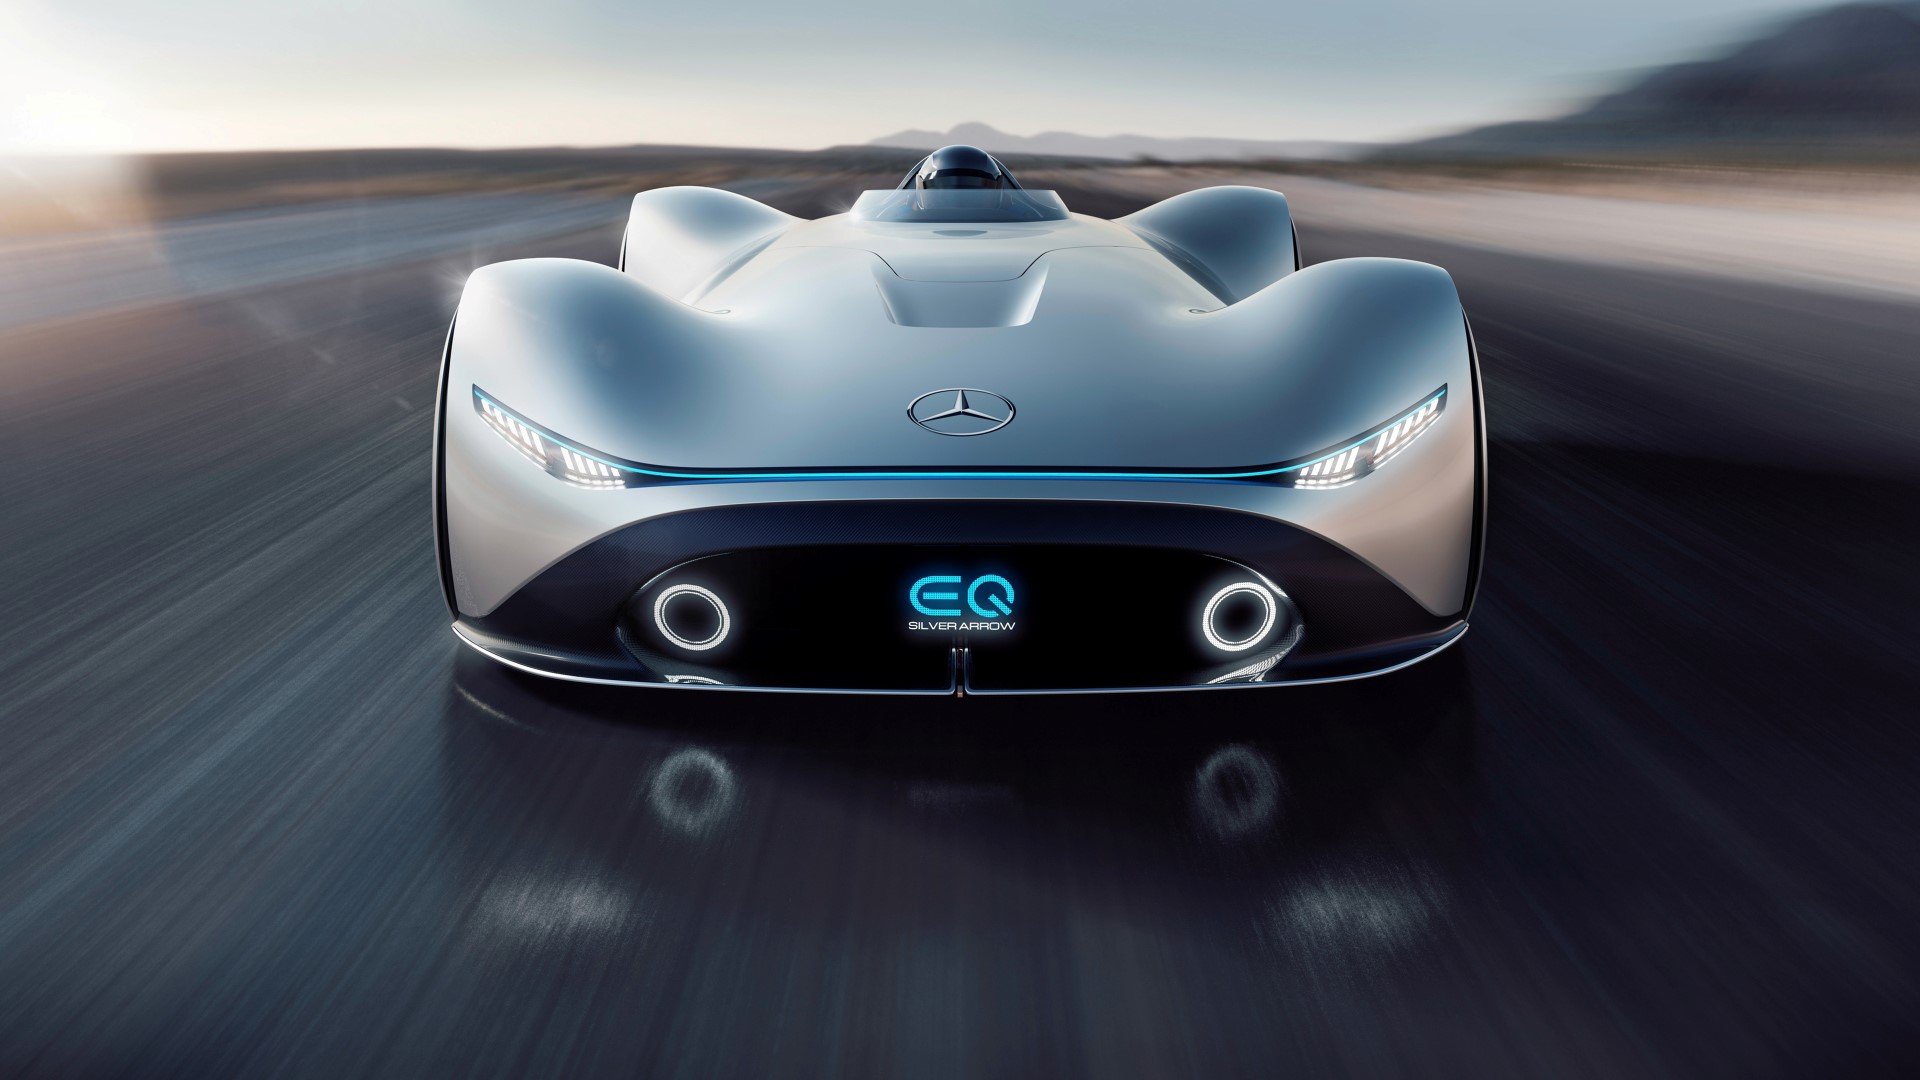 Mercedes-Benz: Η ηλεκτροκίνηση έρχεται το EQ... φεύγει!